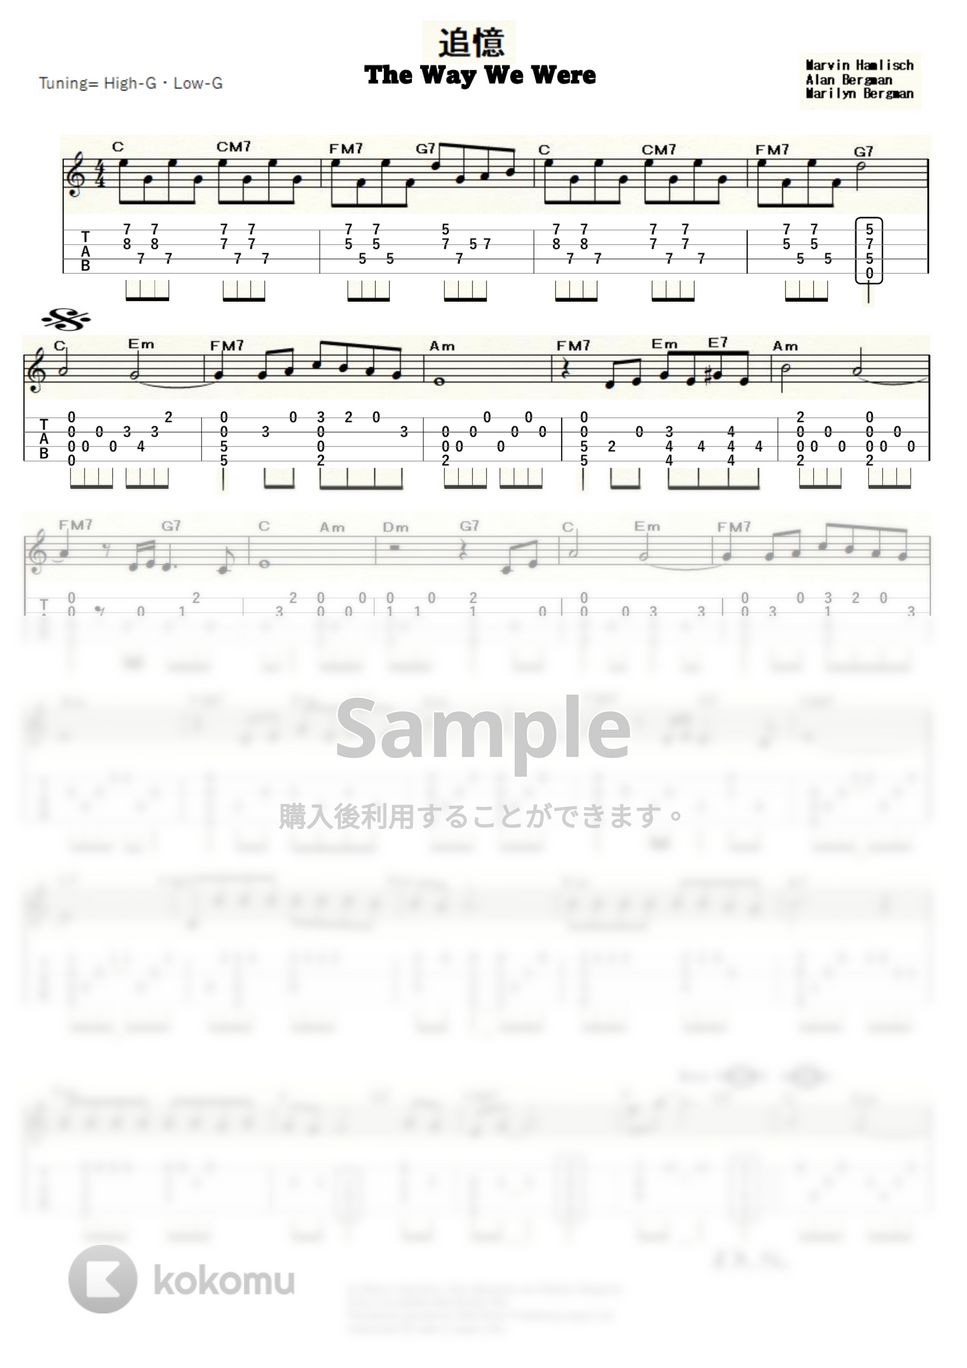 バーブラ・スタライサンド - 追憶-The Way We Were- (ｳｸﾚﾚｿﾛ / High-G,Low-G / 中級) by ukulelepapa